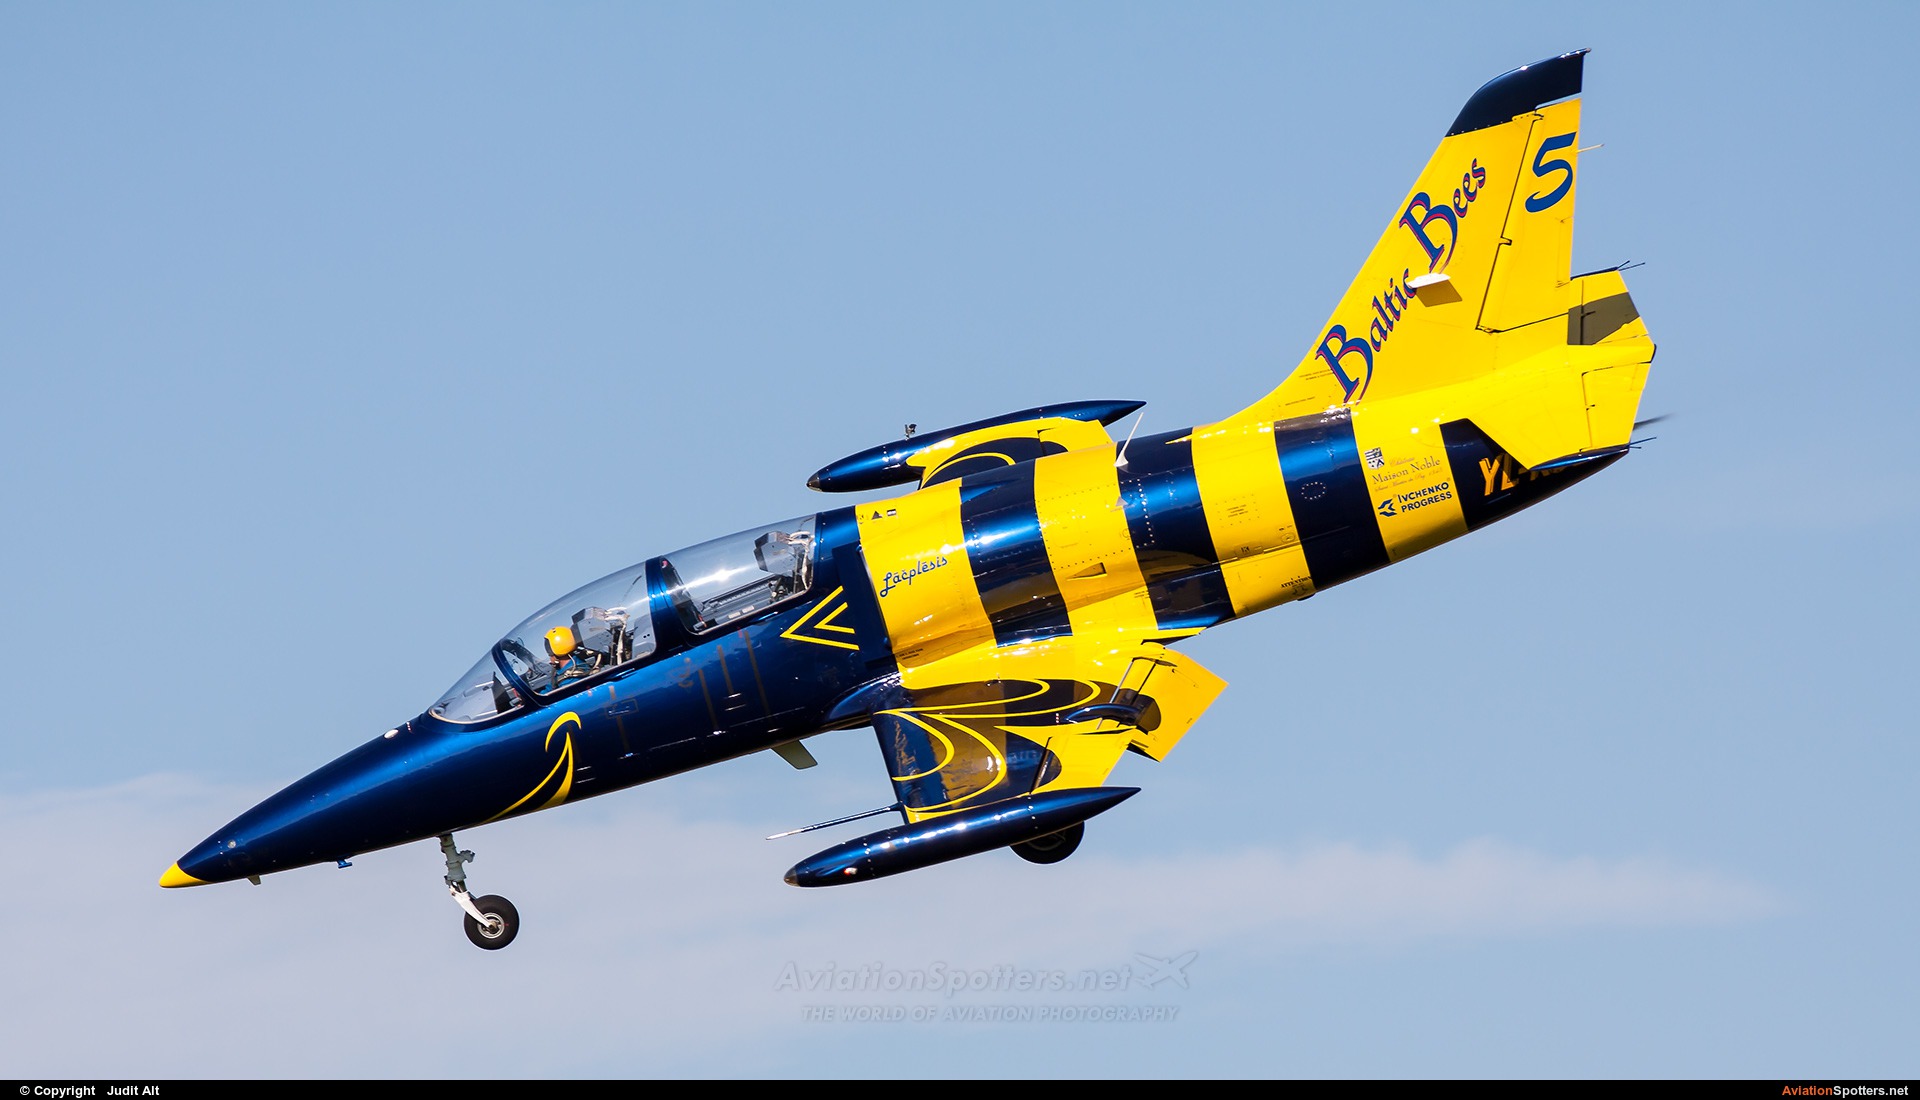 Baltic Bees Jet Team  -  L-39C Albatros  (YL-KSL) By Judit Alt (Judit)